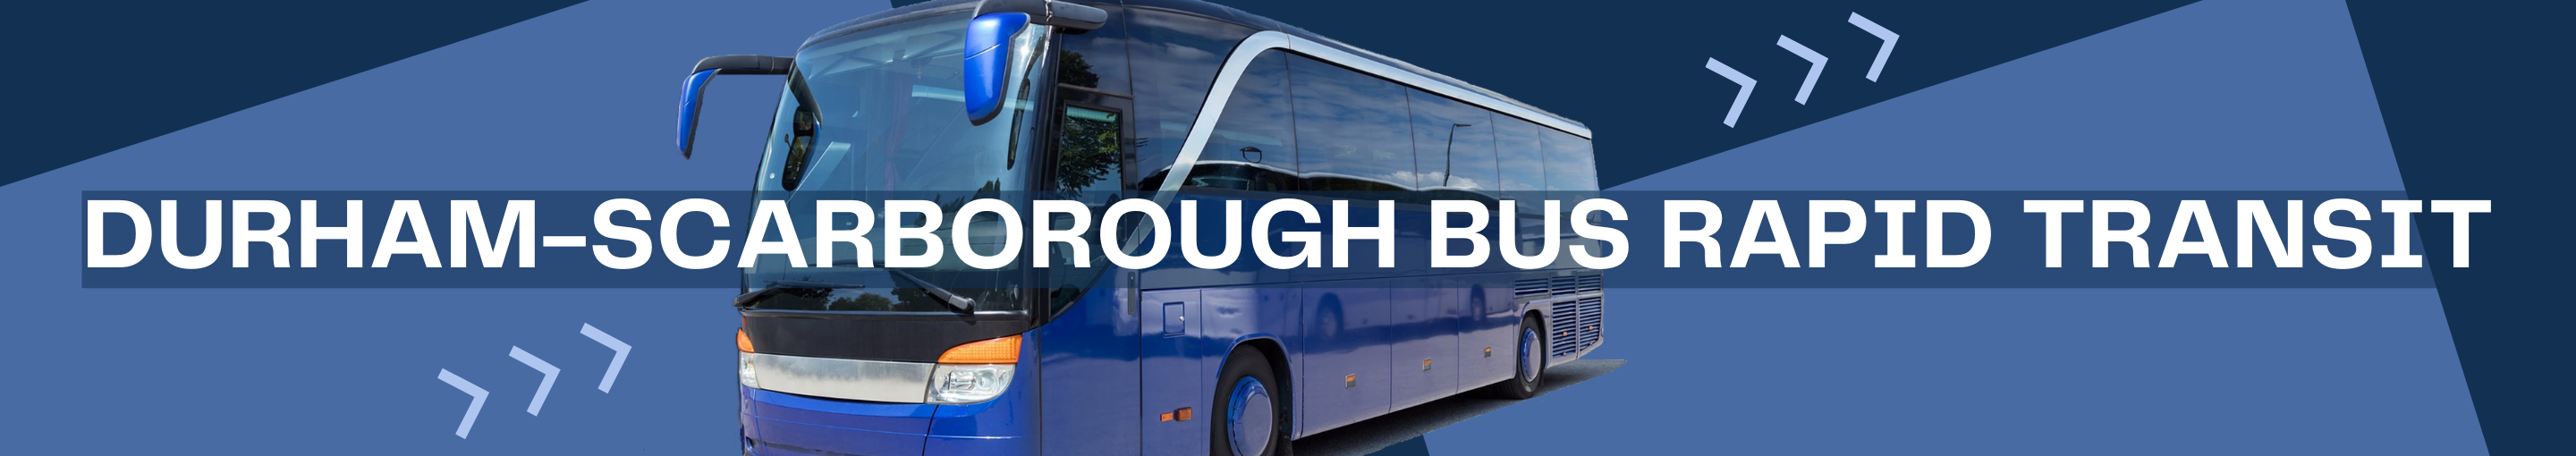 Durham-Scarborough Bus Rapid Transit